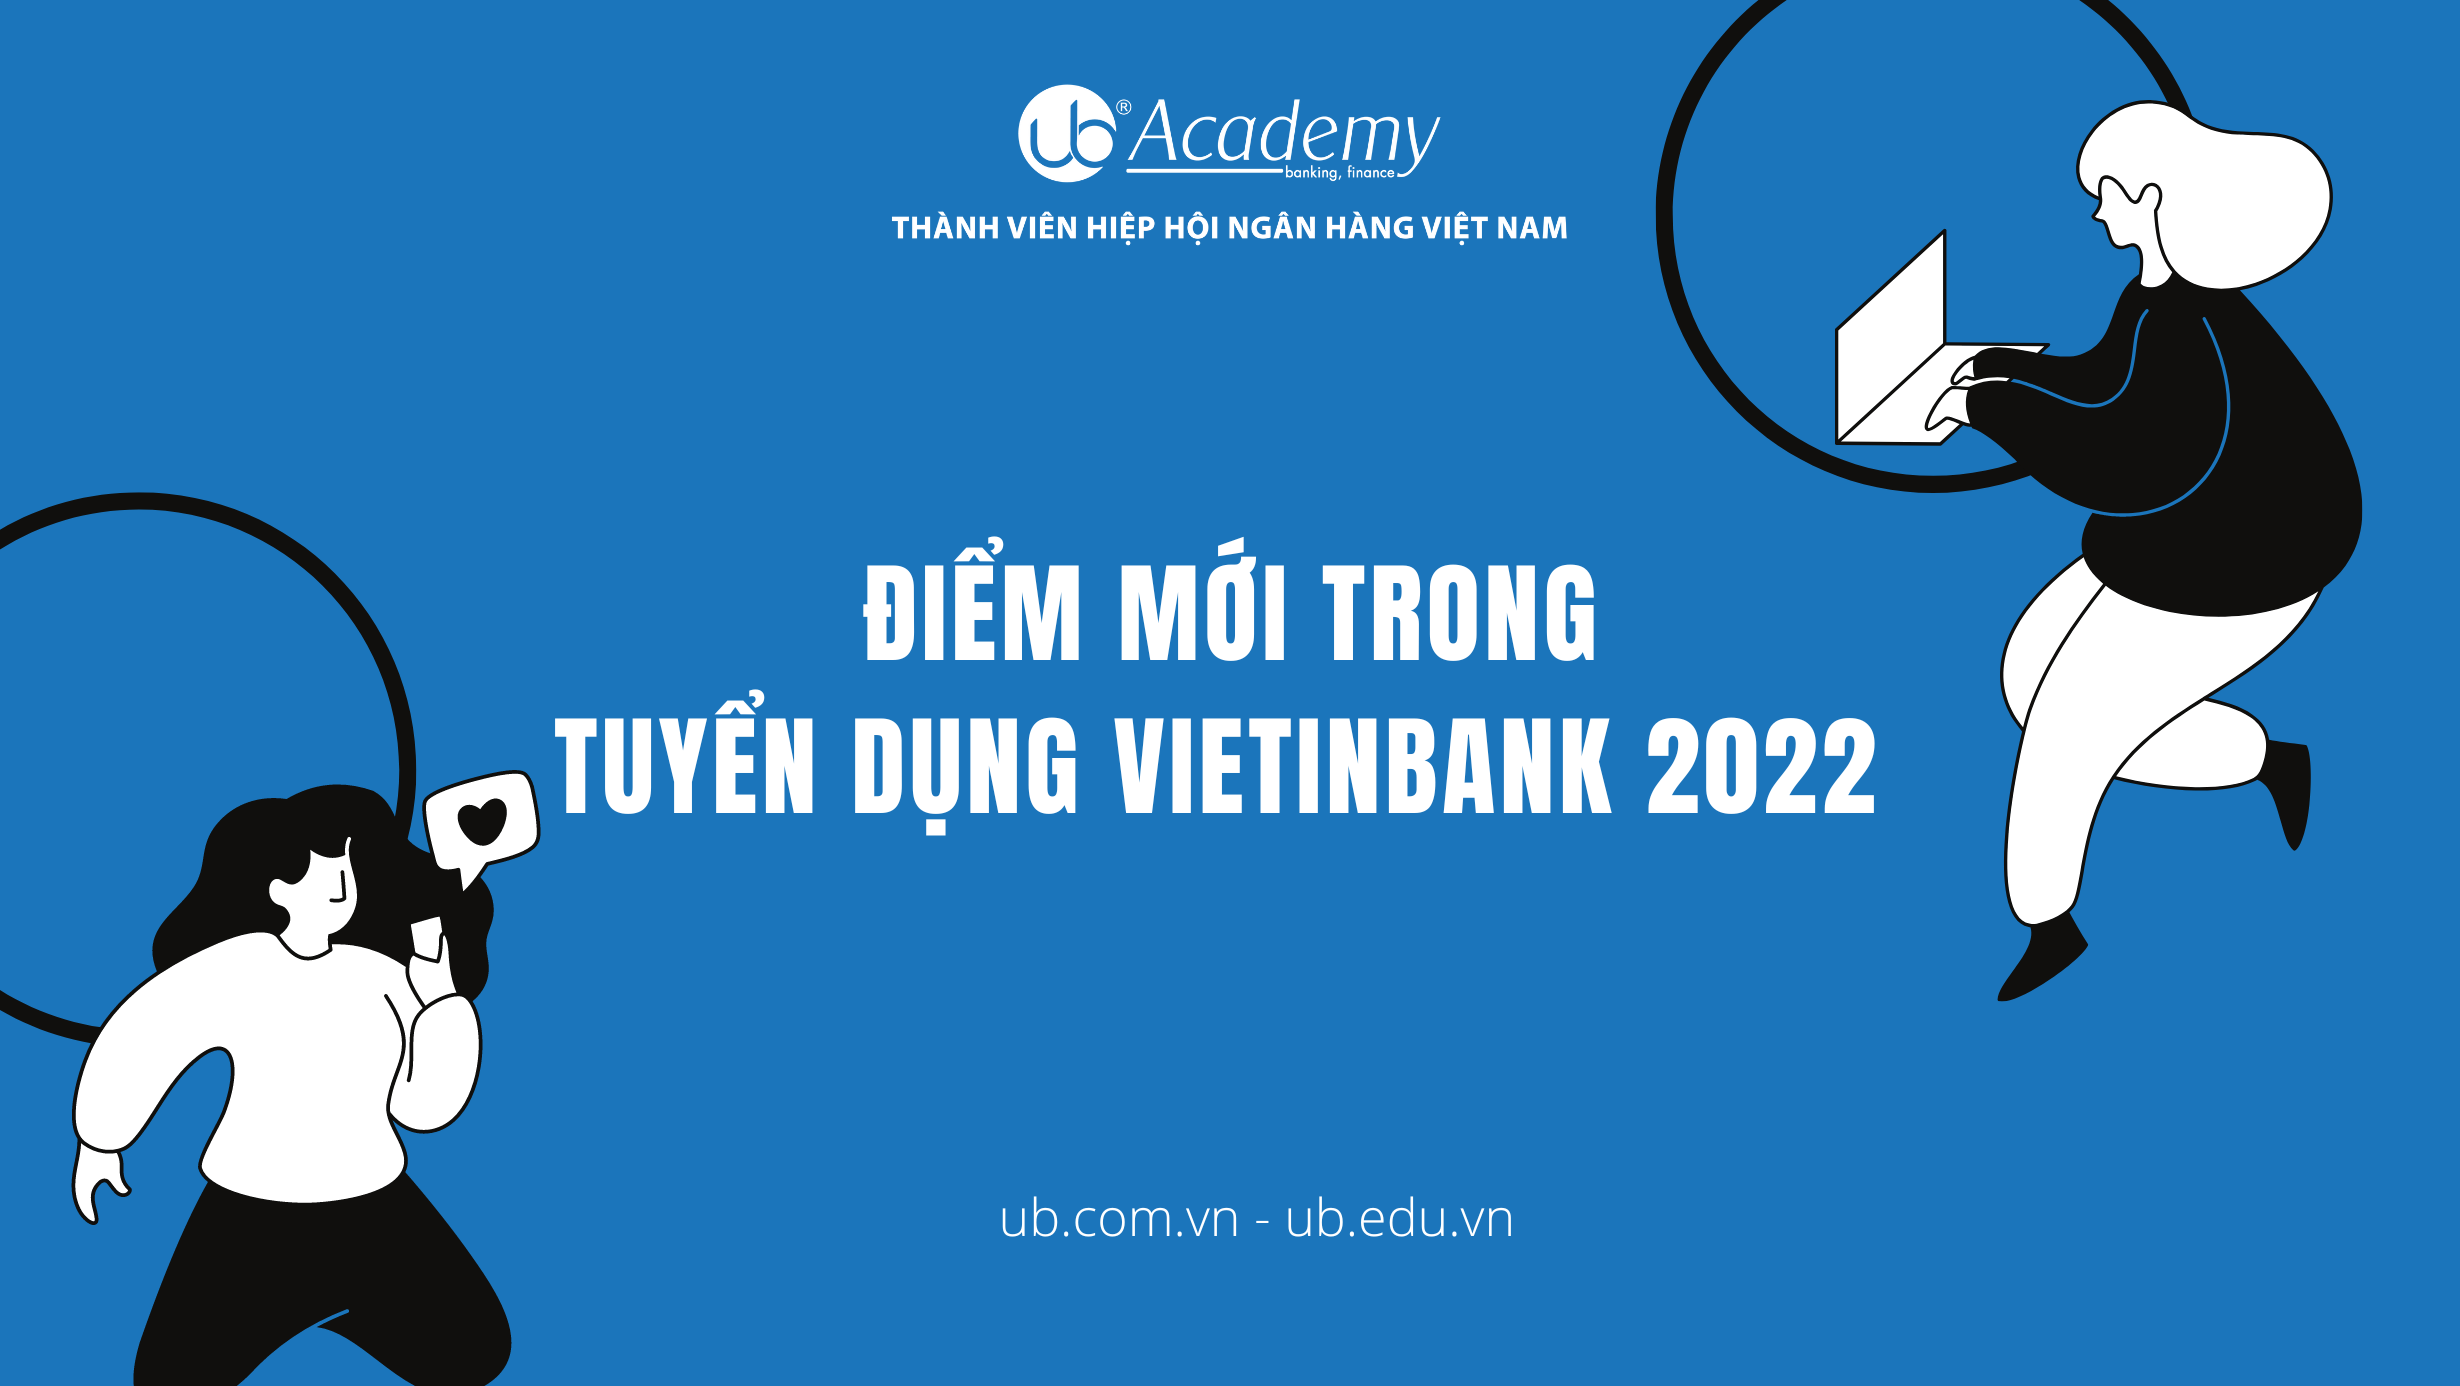 Điểm mới trong Tuyển dụng VietinBank 2022